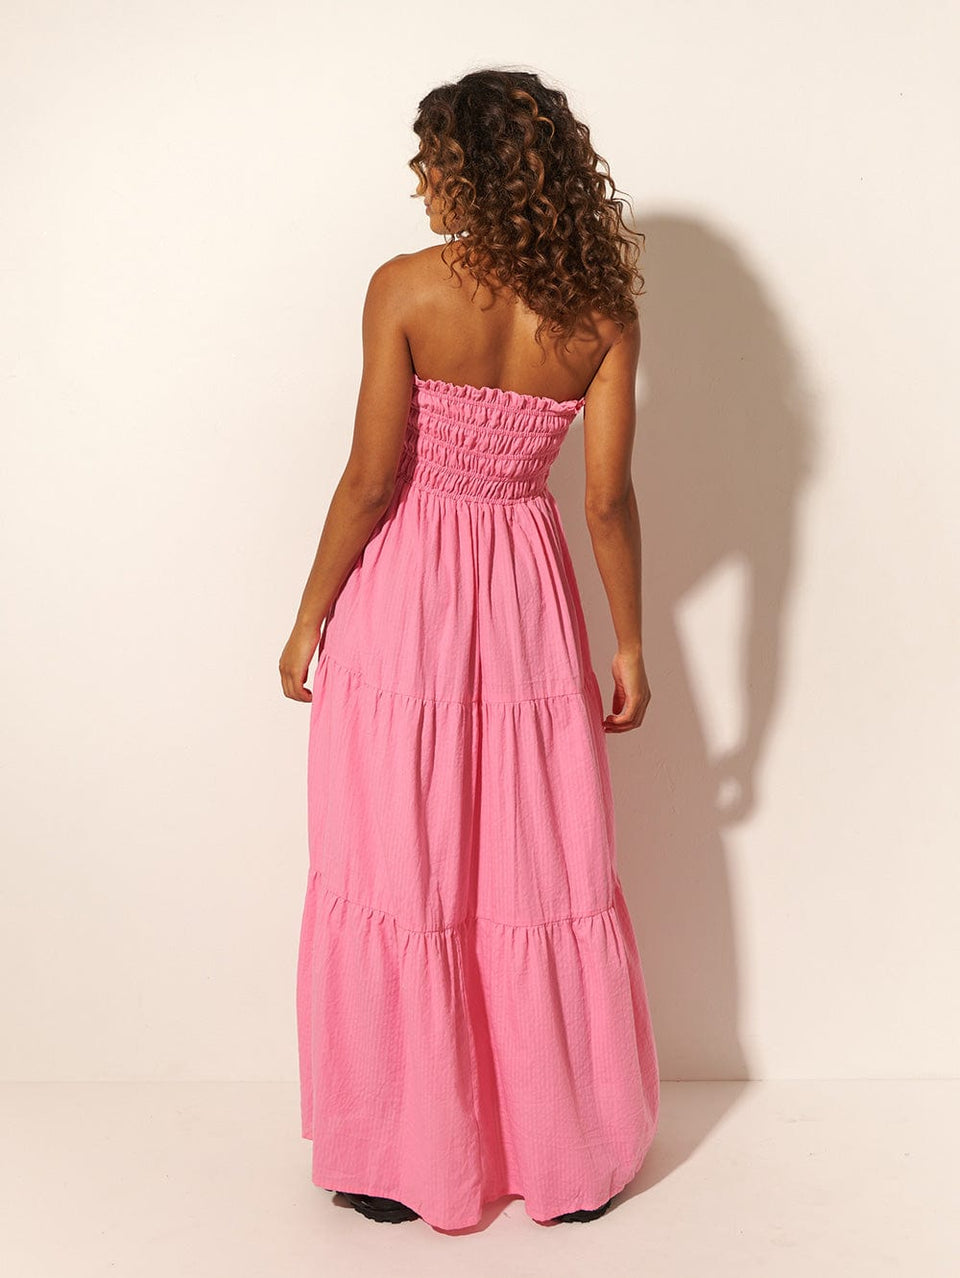 KIVARI Laura Maxi Dress | Model wears Pink Maxi Dress Back View